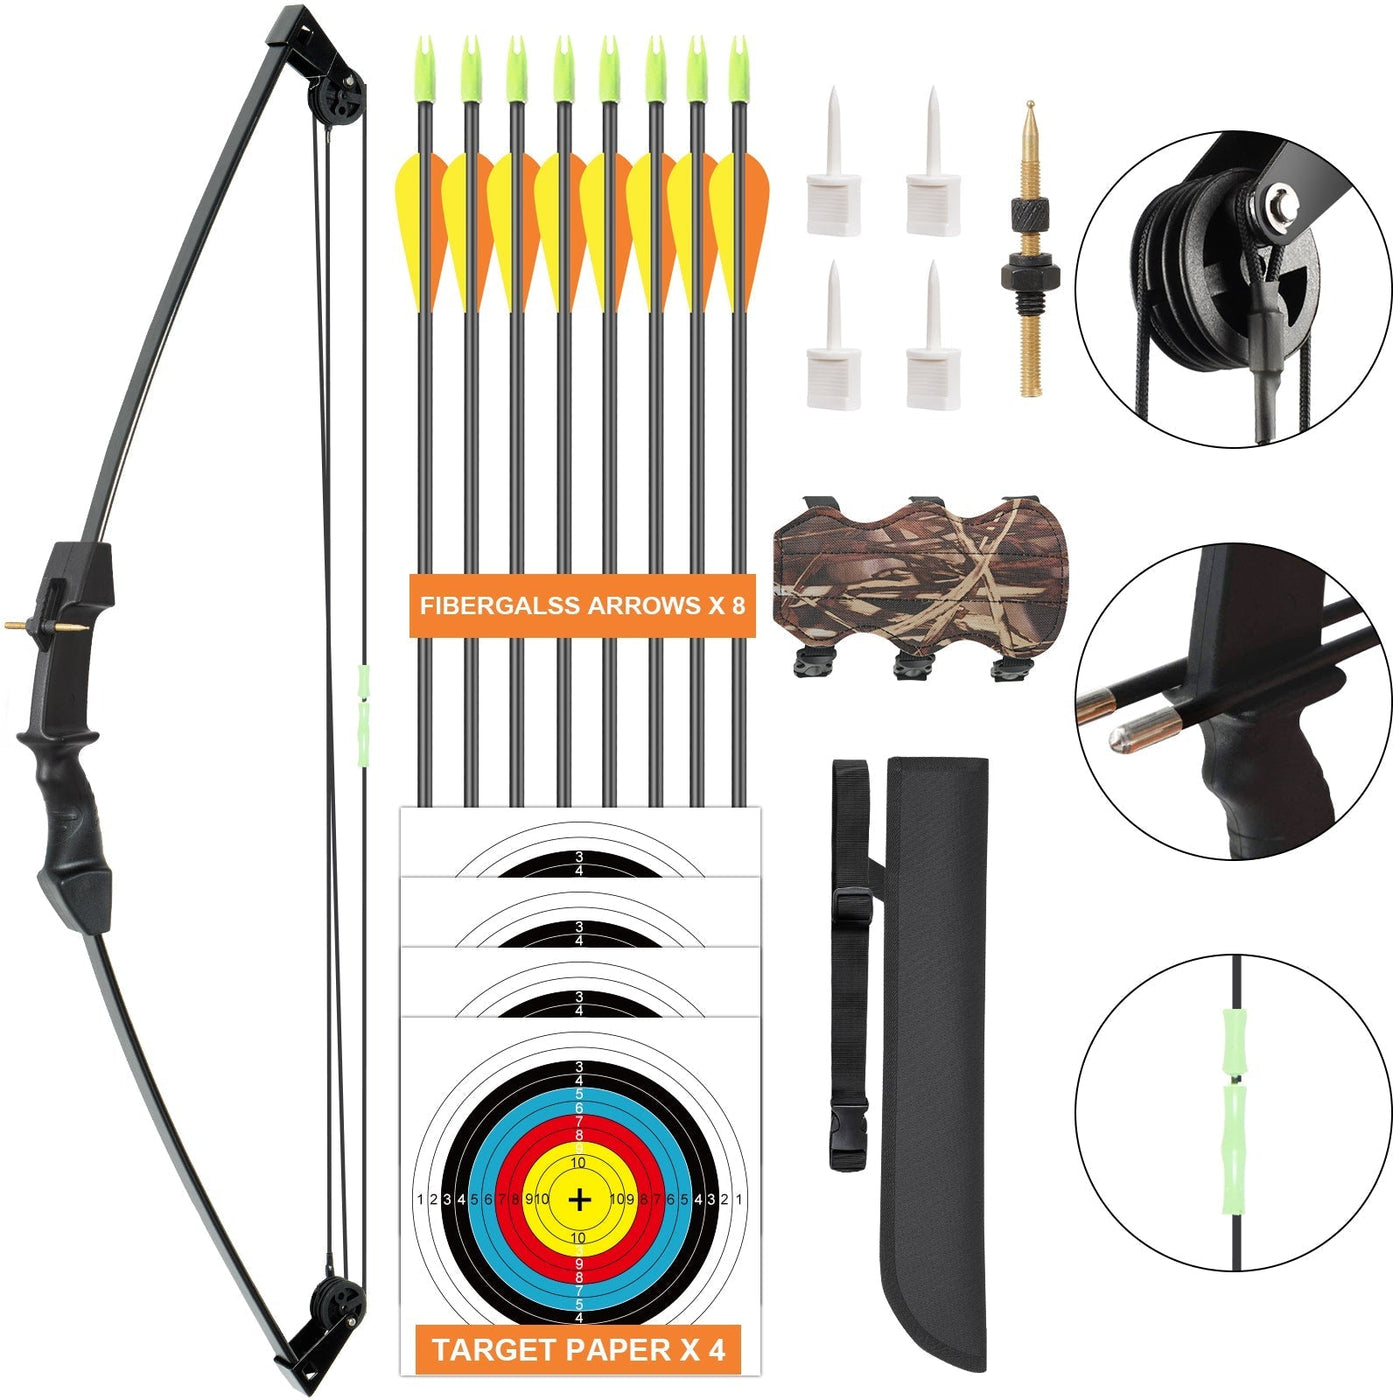 M021 Orange 35" Compound Bow& 8 Arrows Set, for Kids, Ages 6-12